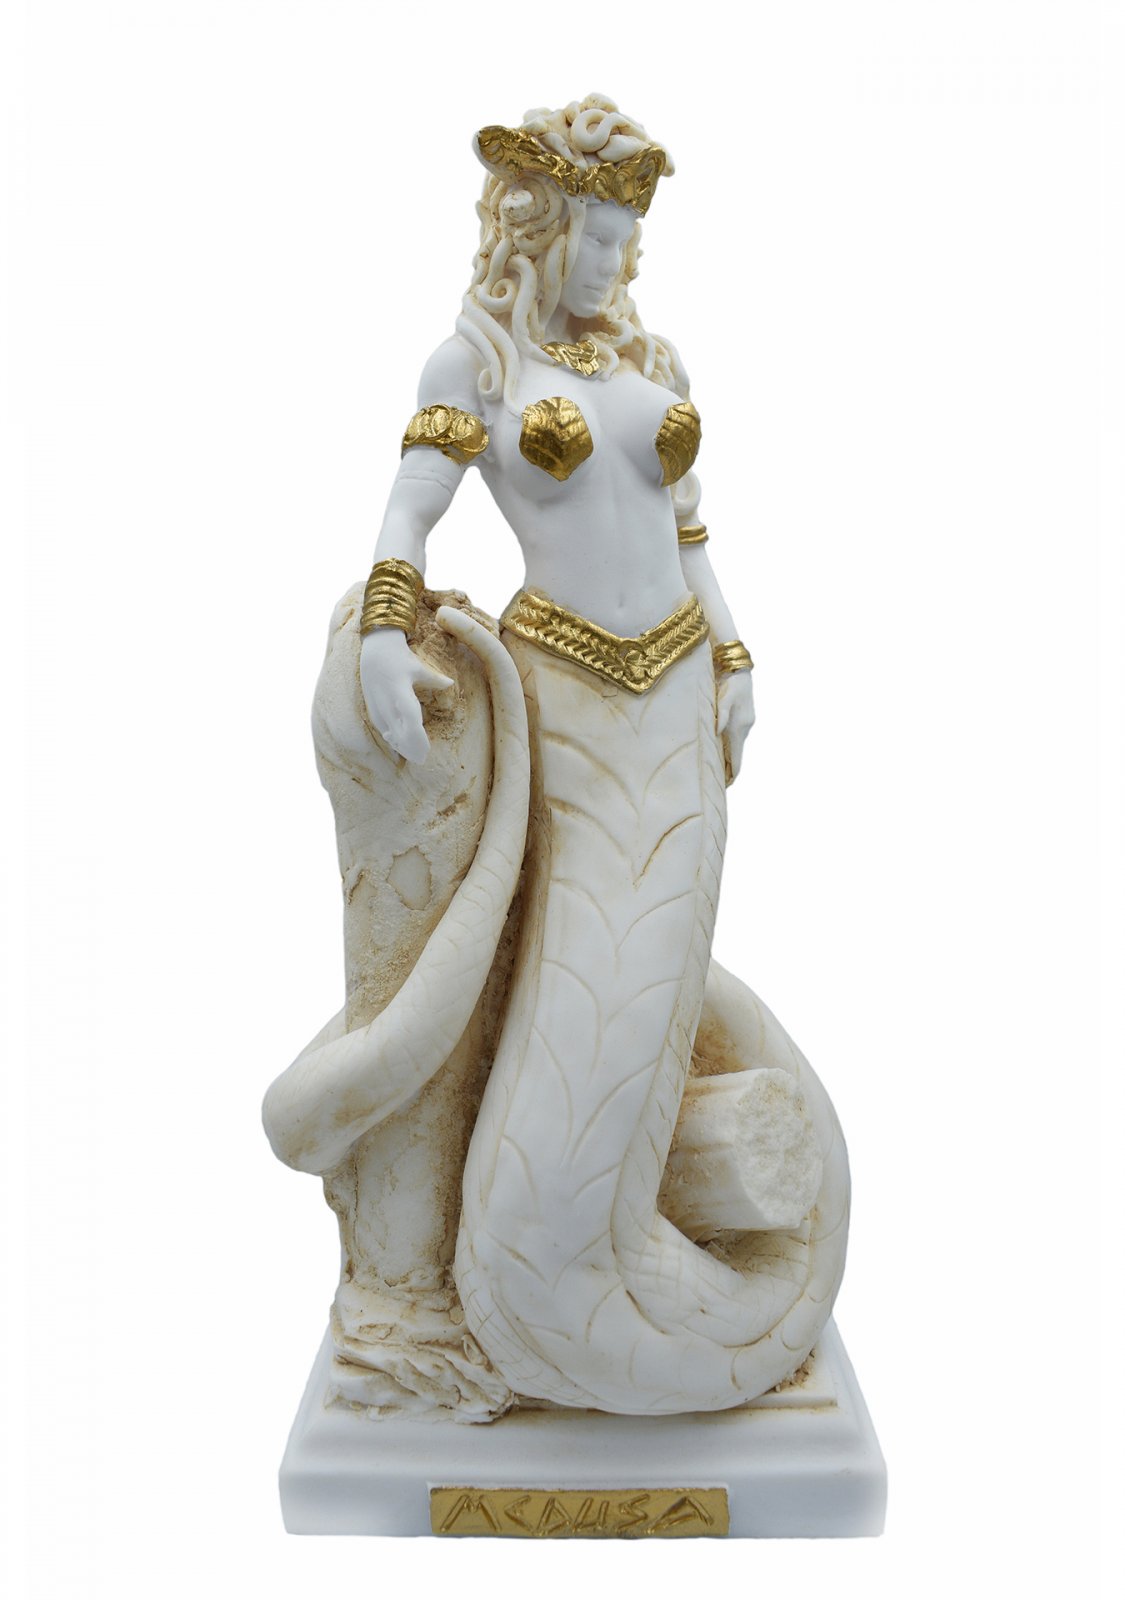 Buy greek souvenirs online bronze greek statues busts pottery jewellery